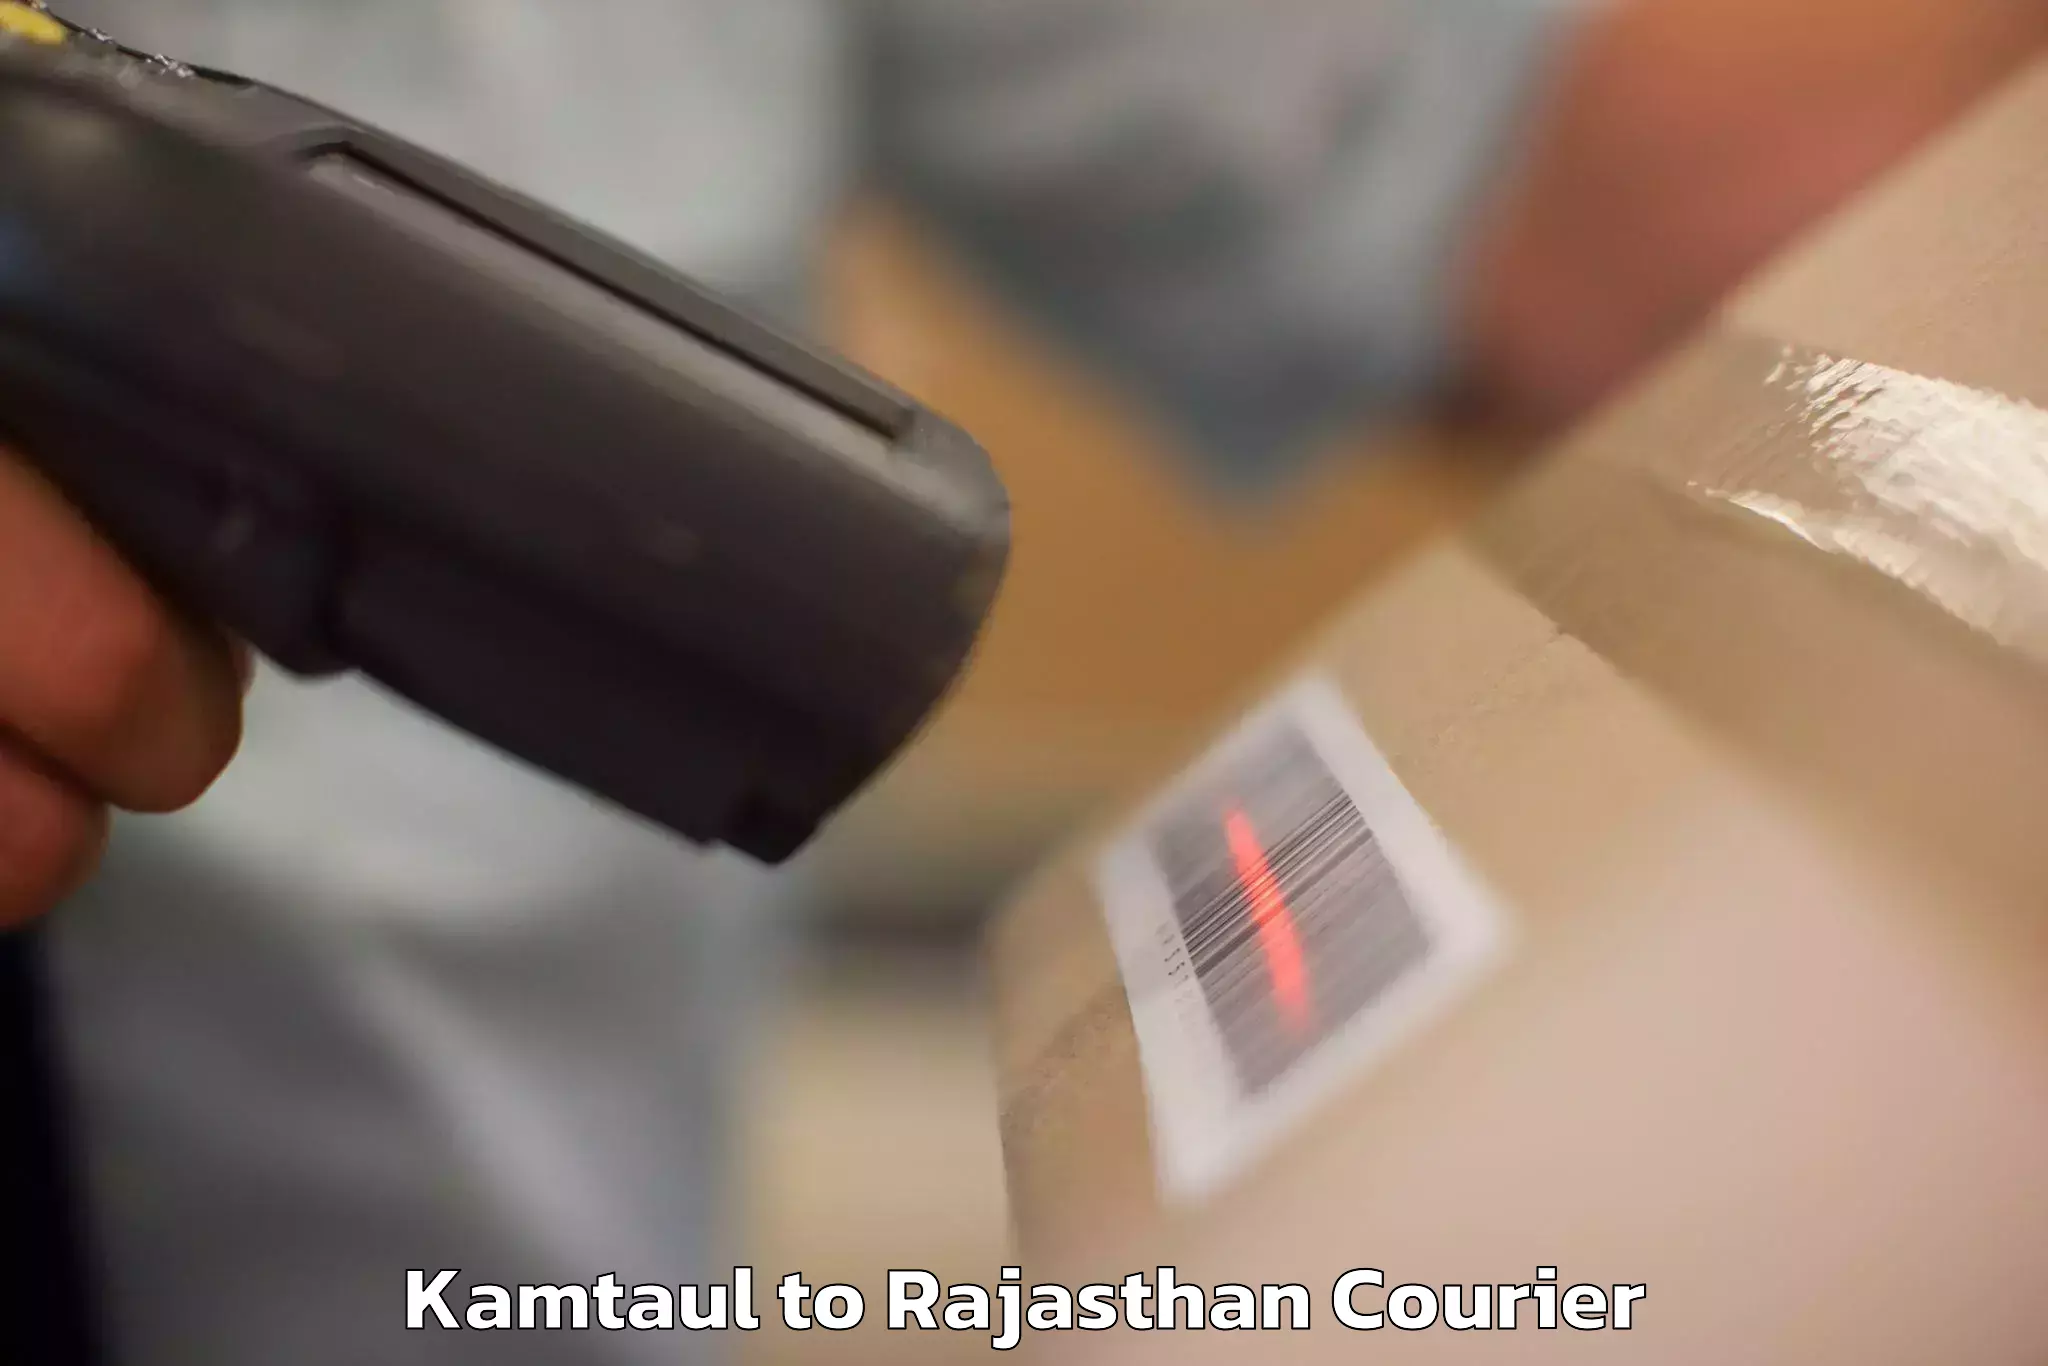 Luggage shipment tracking Kamtaul to Chhabra